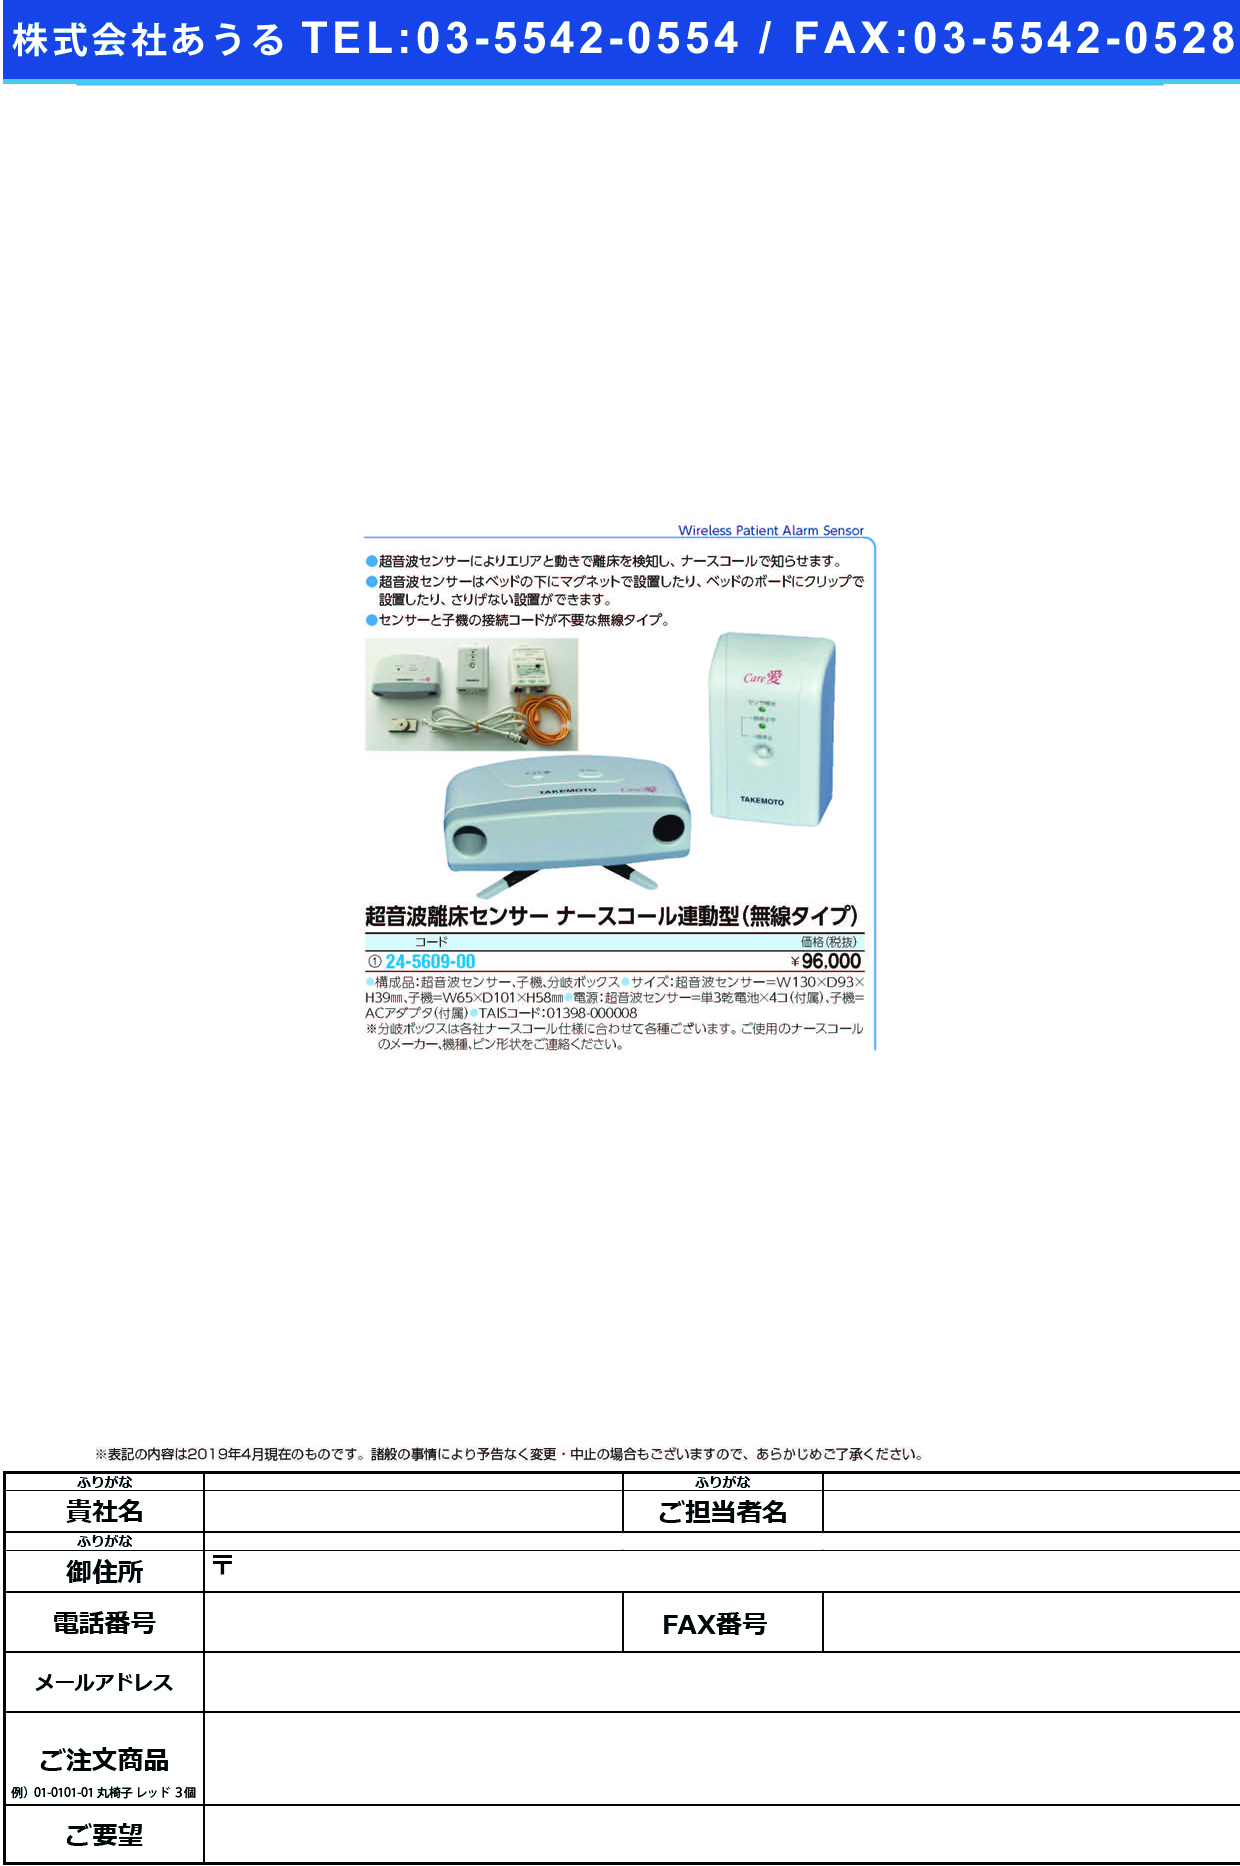 (24-5609-00)超音波離床センサー（ナースコール連動 ﾑｾﾝﾀｲﾌﾟ ﾁｮｳｵﾝﾊﾟﾘｼｮｳｾﾝｻｰ【1式単位】【2019年カタログ商品】